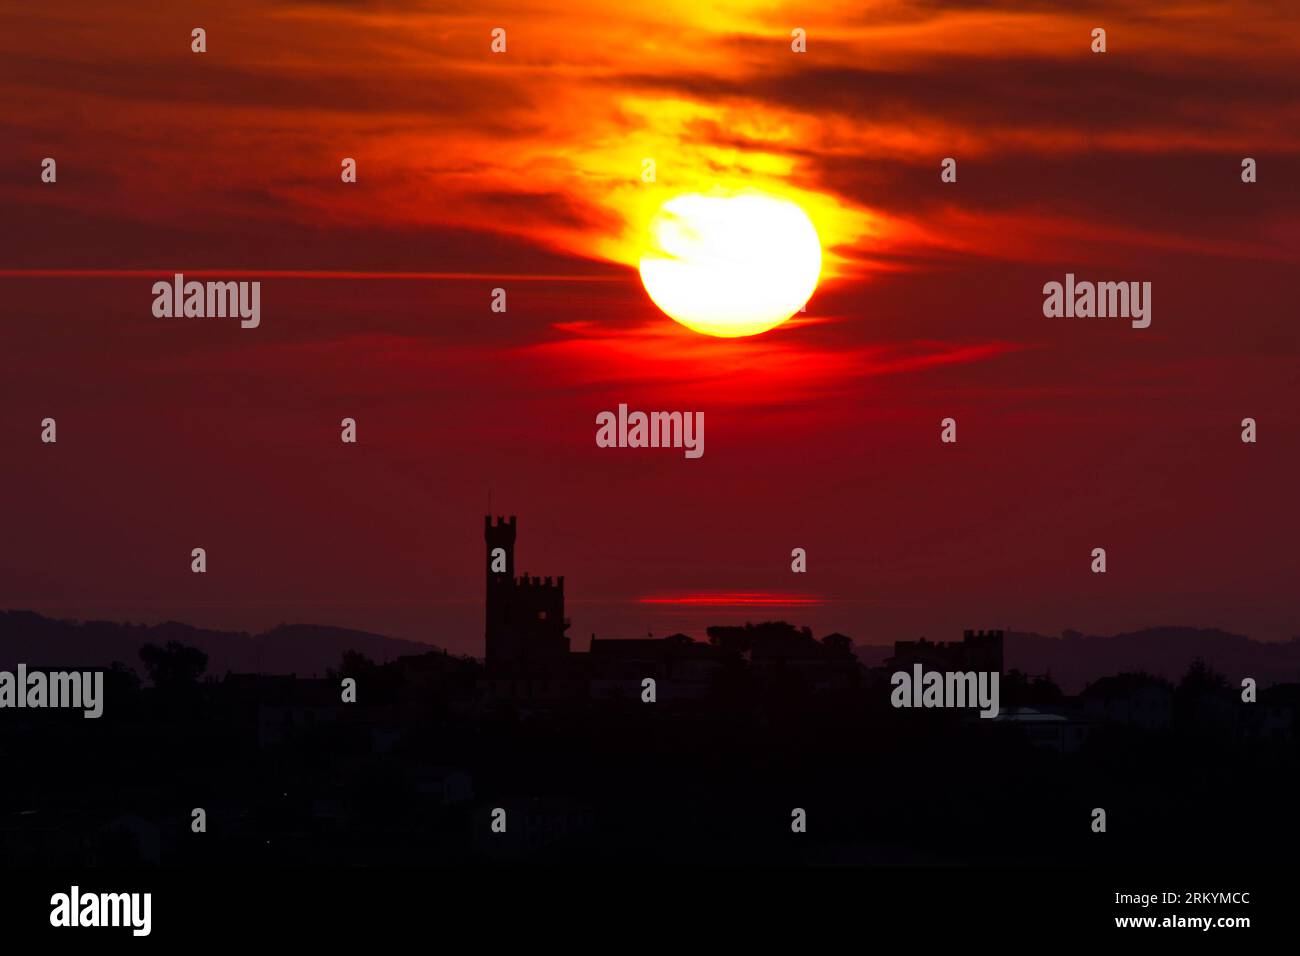 alba sull'Adriatico dietro al castello di Tavoleto Stock Photo